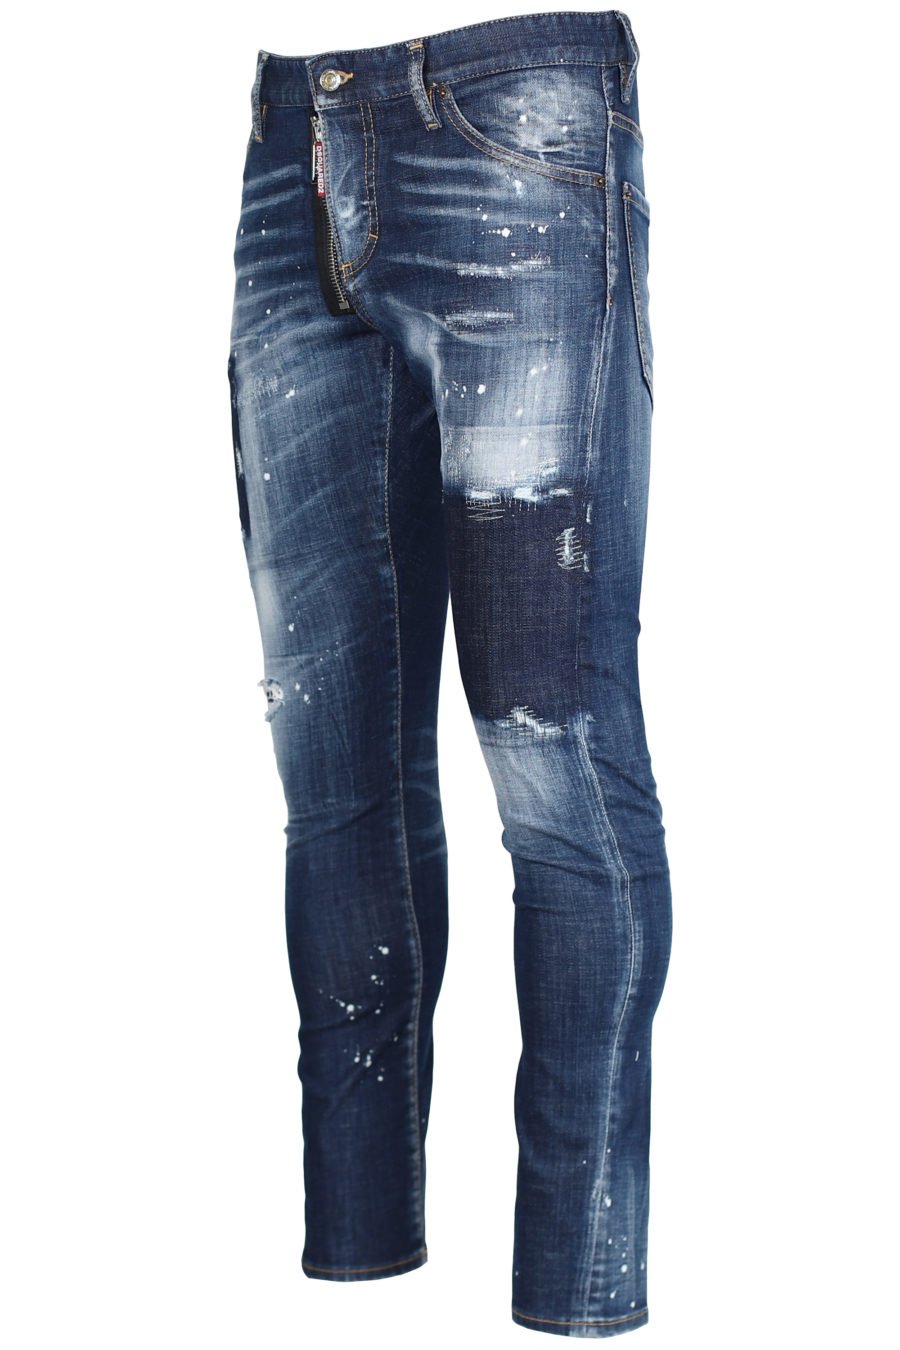 Jeans "Sexy twist jean" bleu avec fermeture éclair - IMG 2453